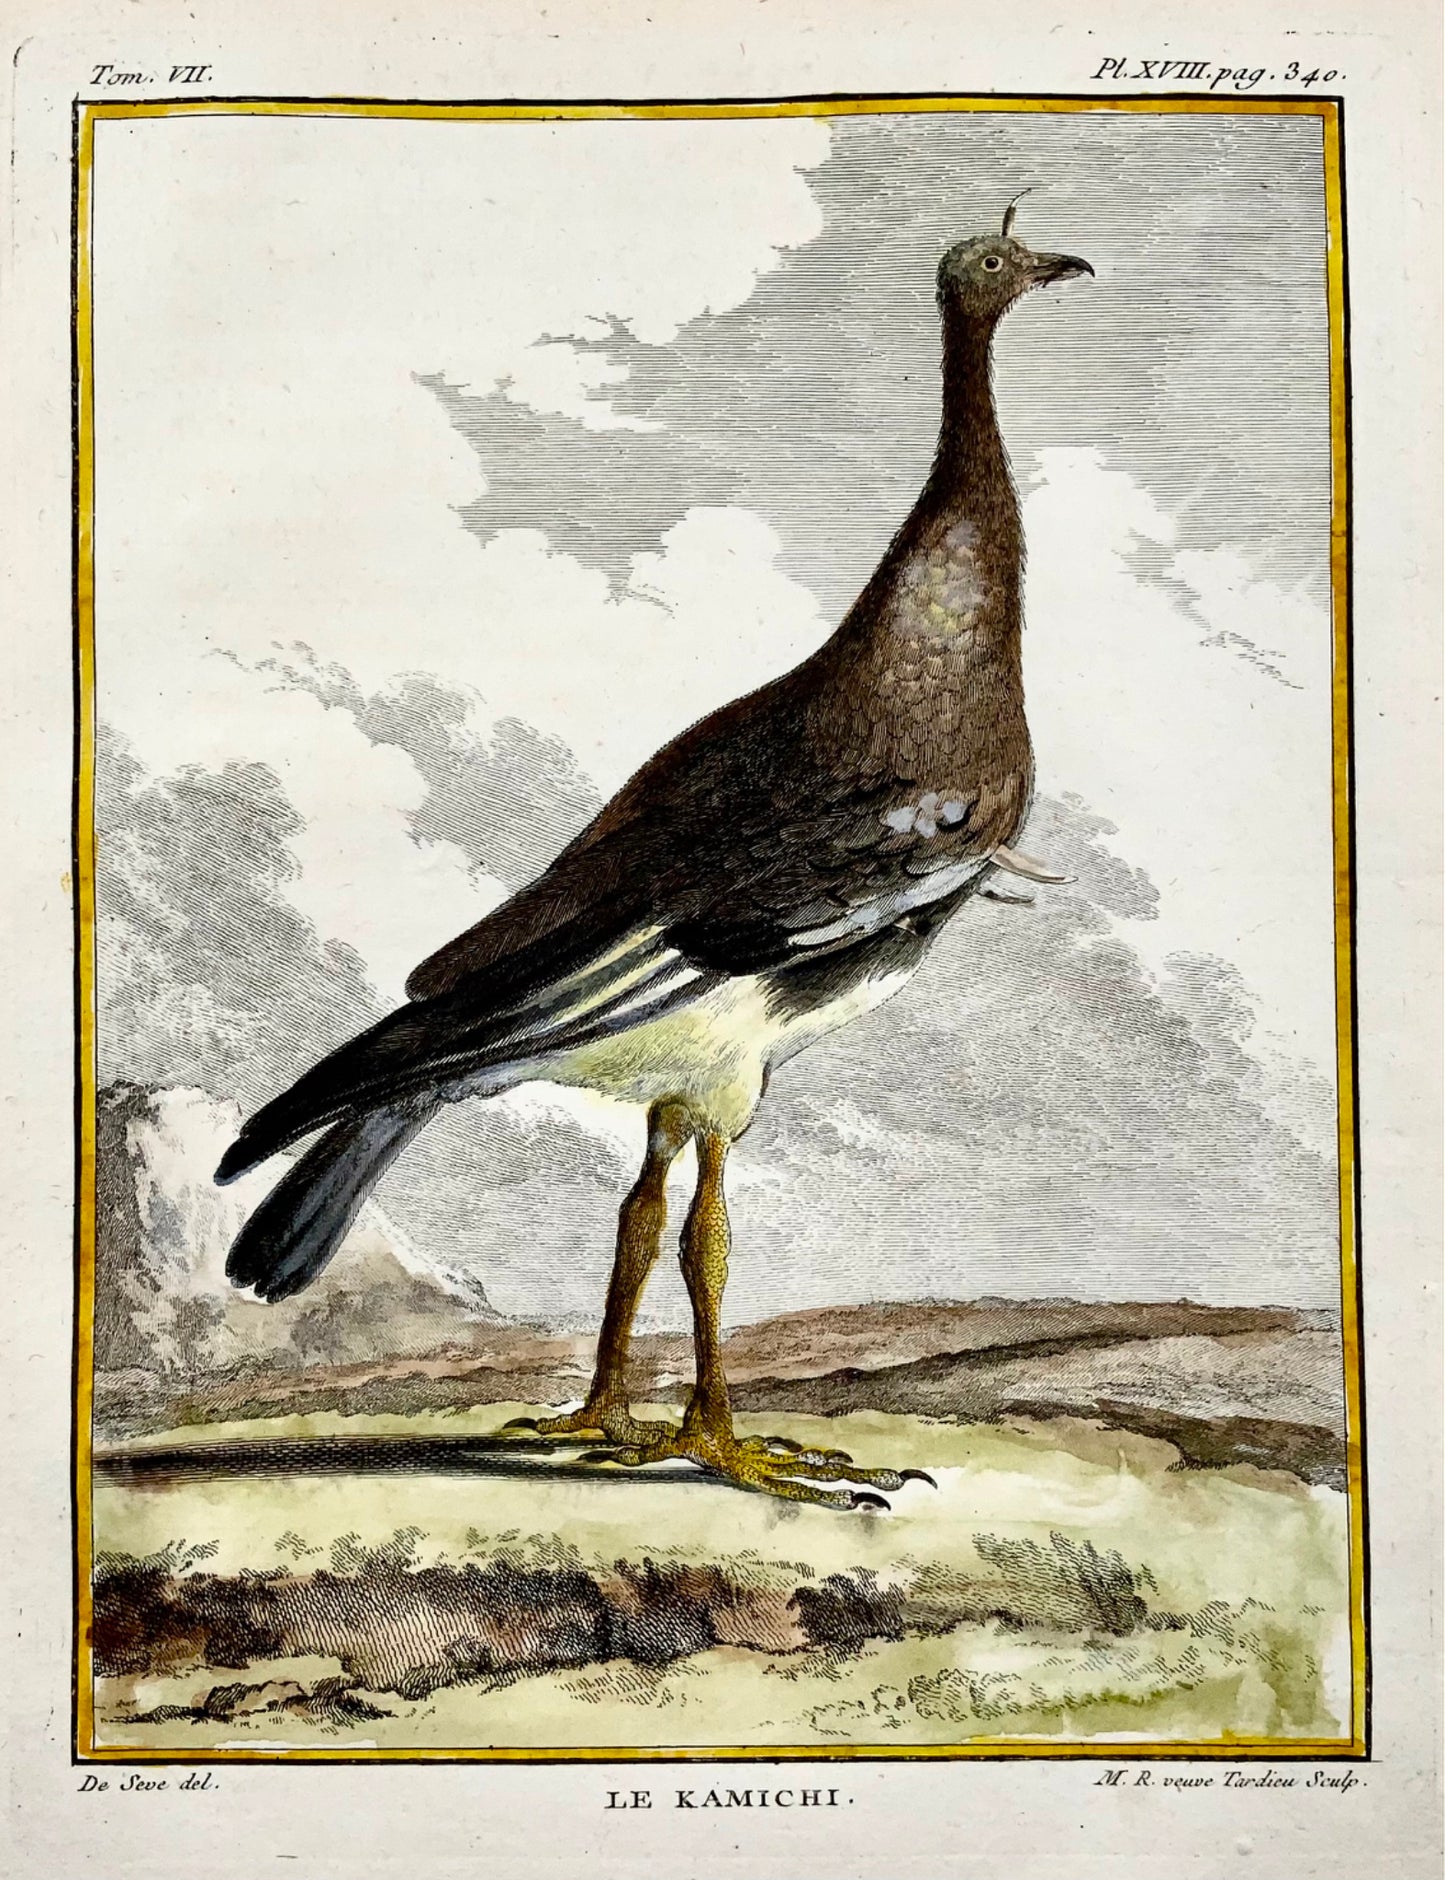 1779 de Seve - S'ern SCREAMER - Ornithologie - Gravure in-4 grande édition